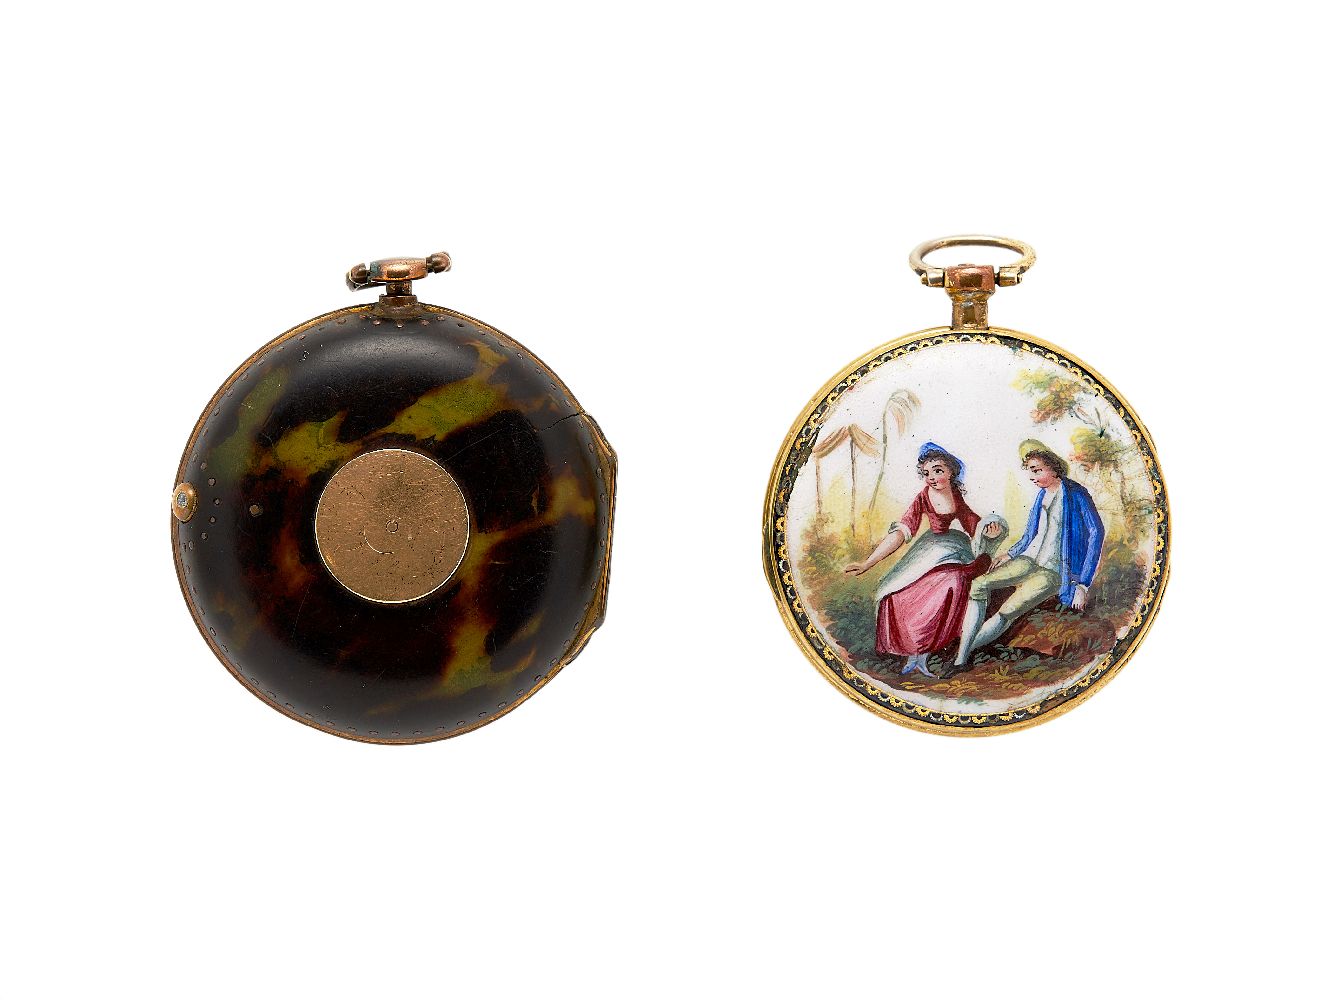 ϒ William Hughes, London, Gilt metal and tortoiseshell pair cased pocket watch - Image 2 of 2